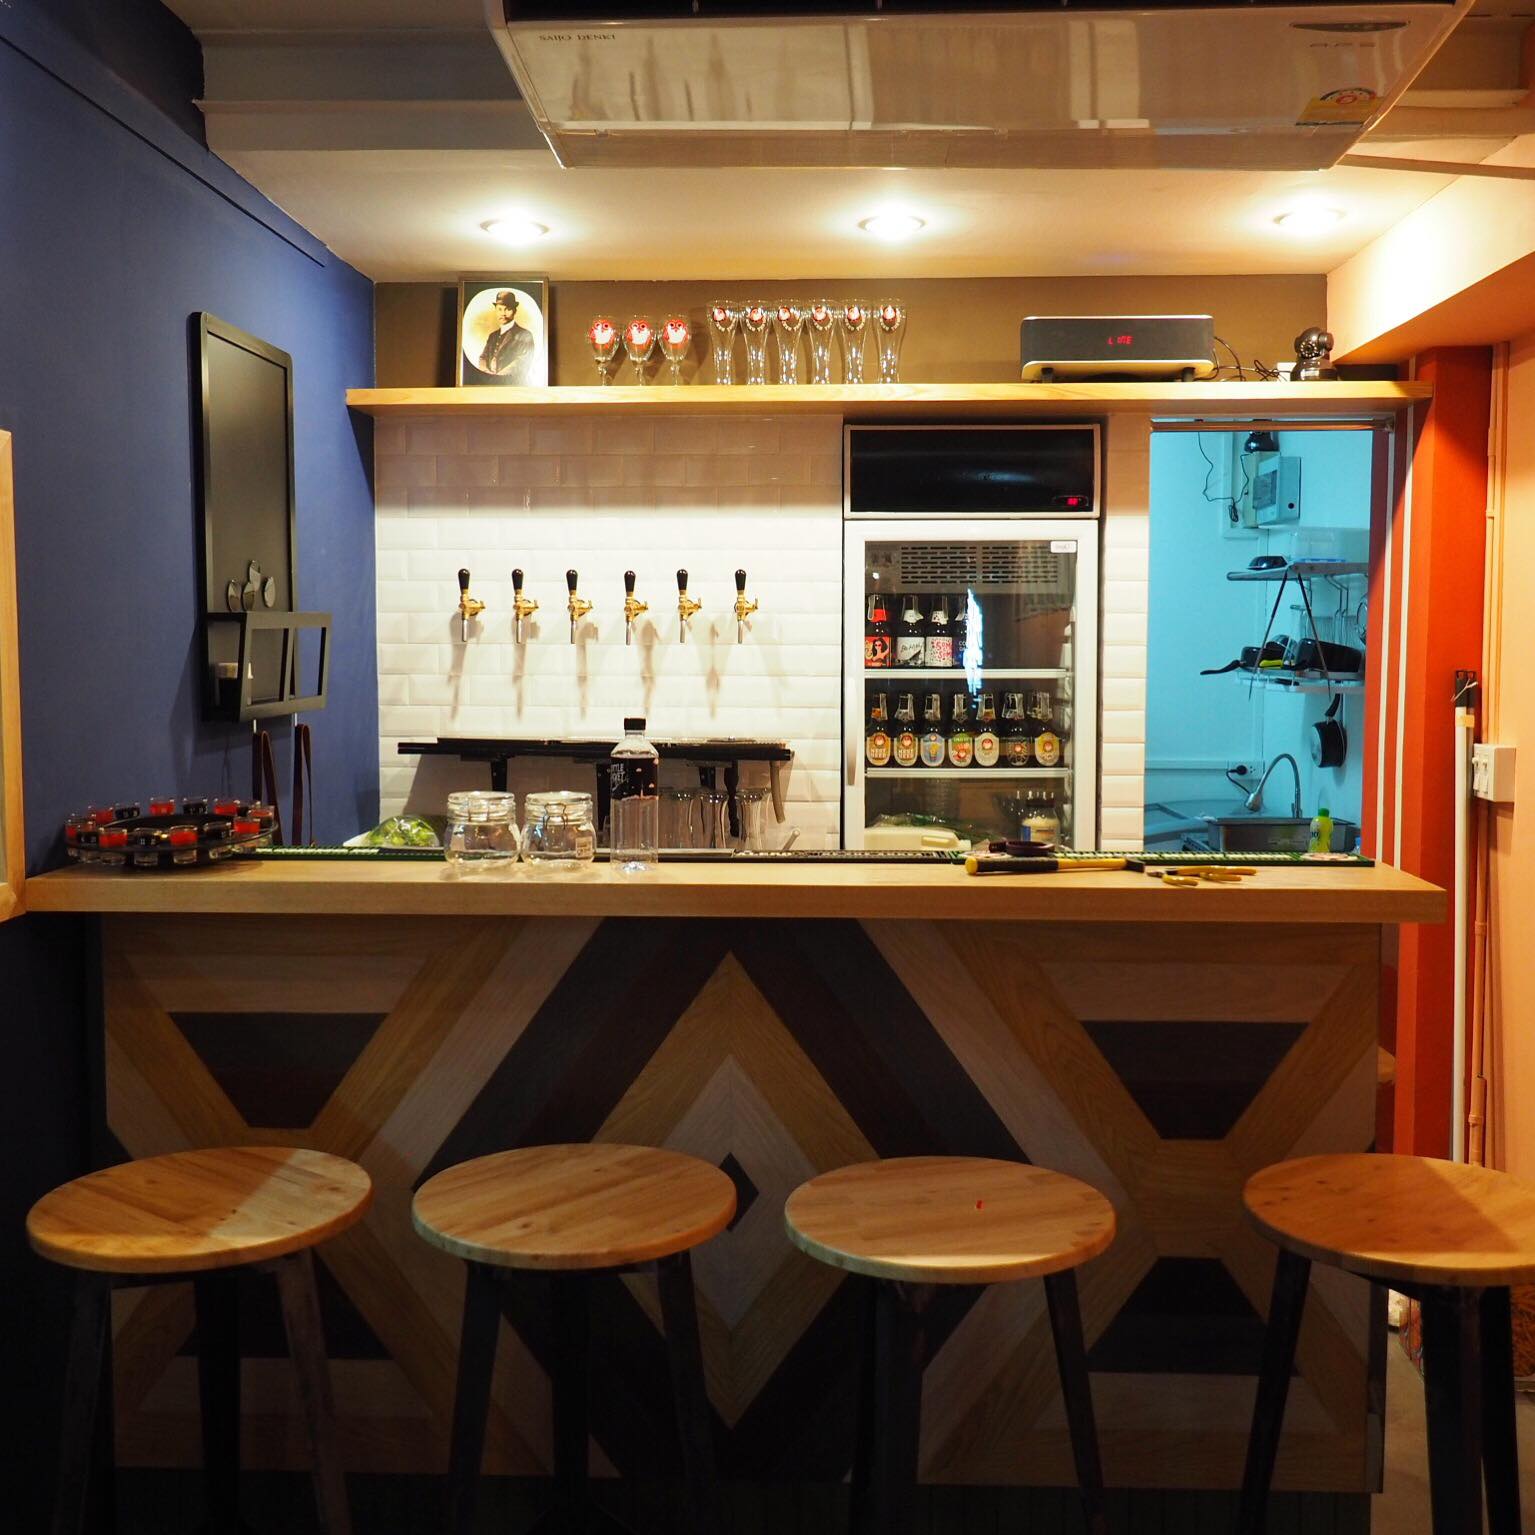 บ็อทเทิลร็อคเก็ต คราฟท์เบียร์บาร์ (Bottle rocket craft beer bar) : กรุงเทพมหานคร (Bangkok)